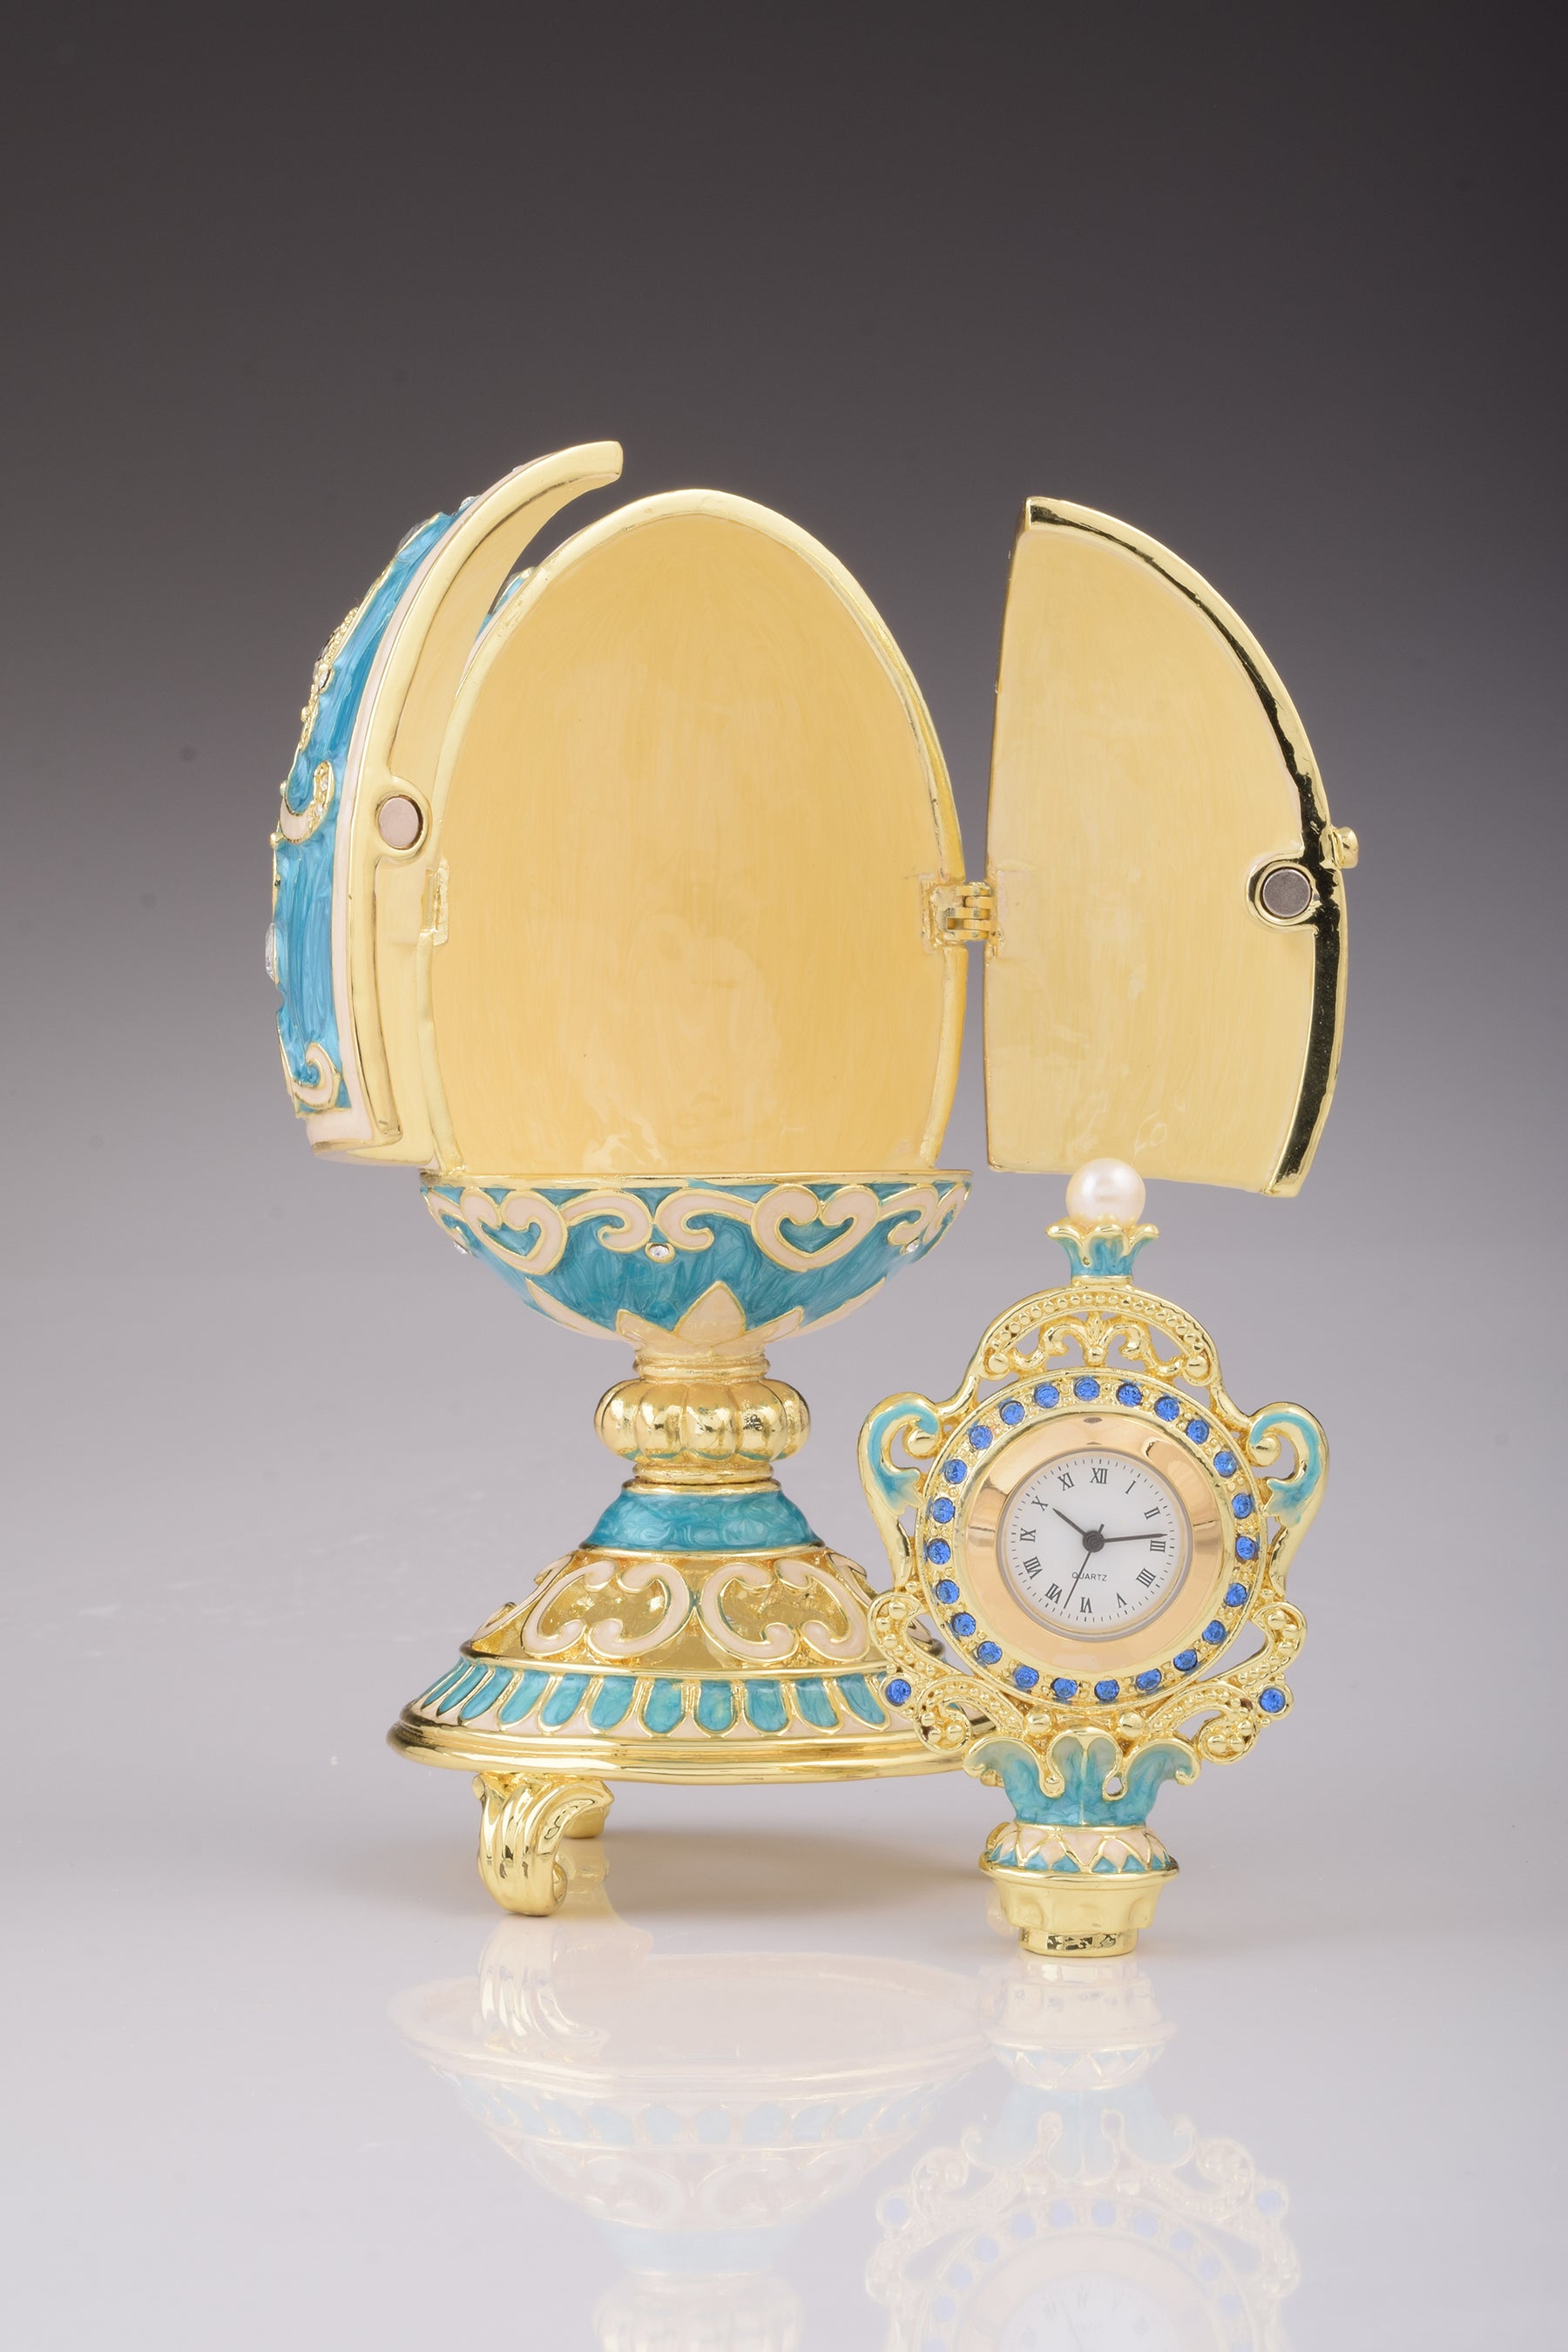 Oeuf Fabergé bleu sarcelle avec horloge à l'intérieur